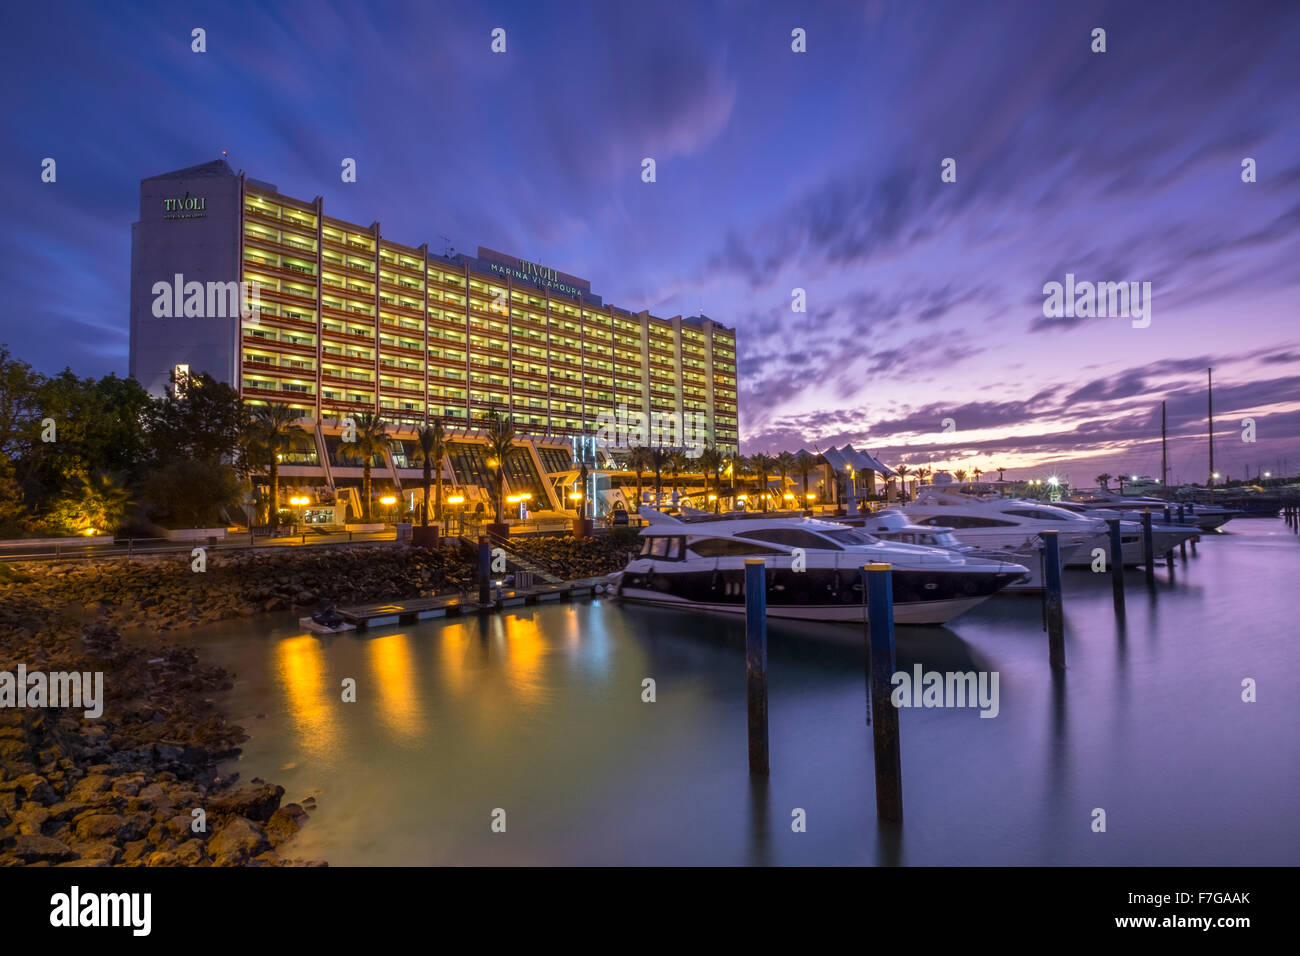 The Hotel Tivoli Marina at night, Vilamoura, Portugal Stock Photo